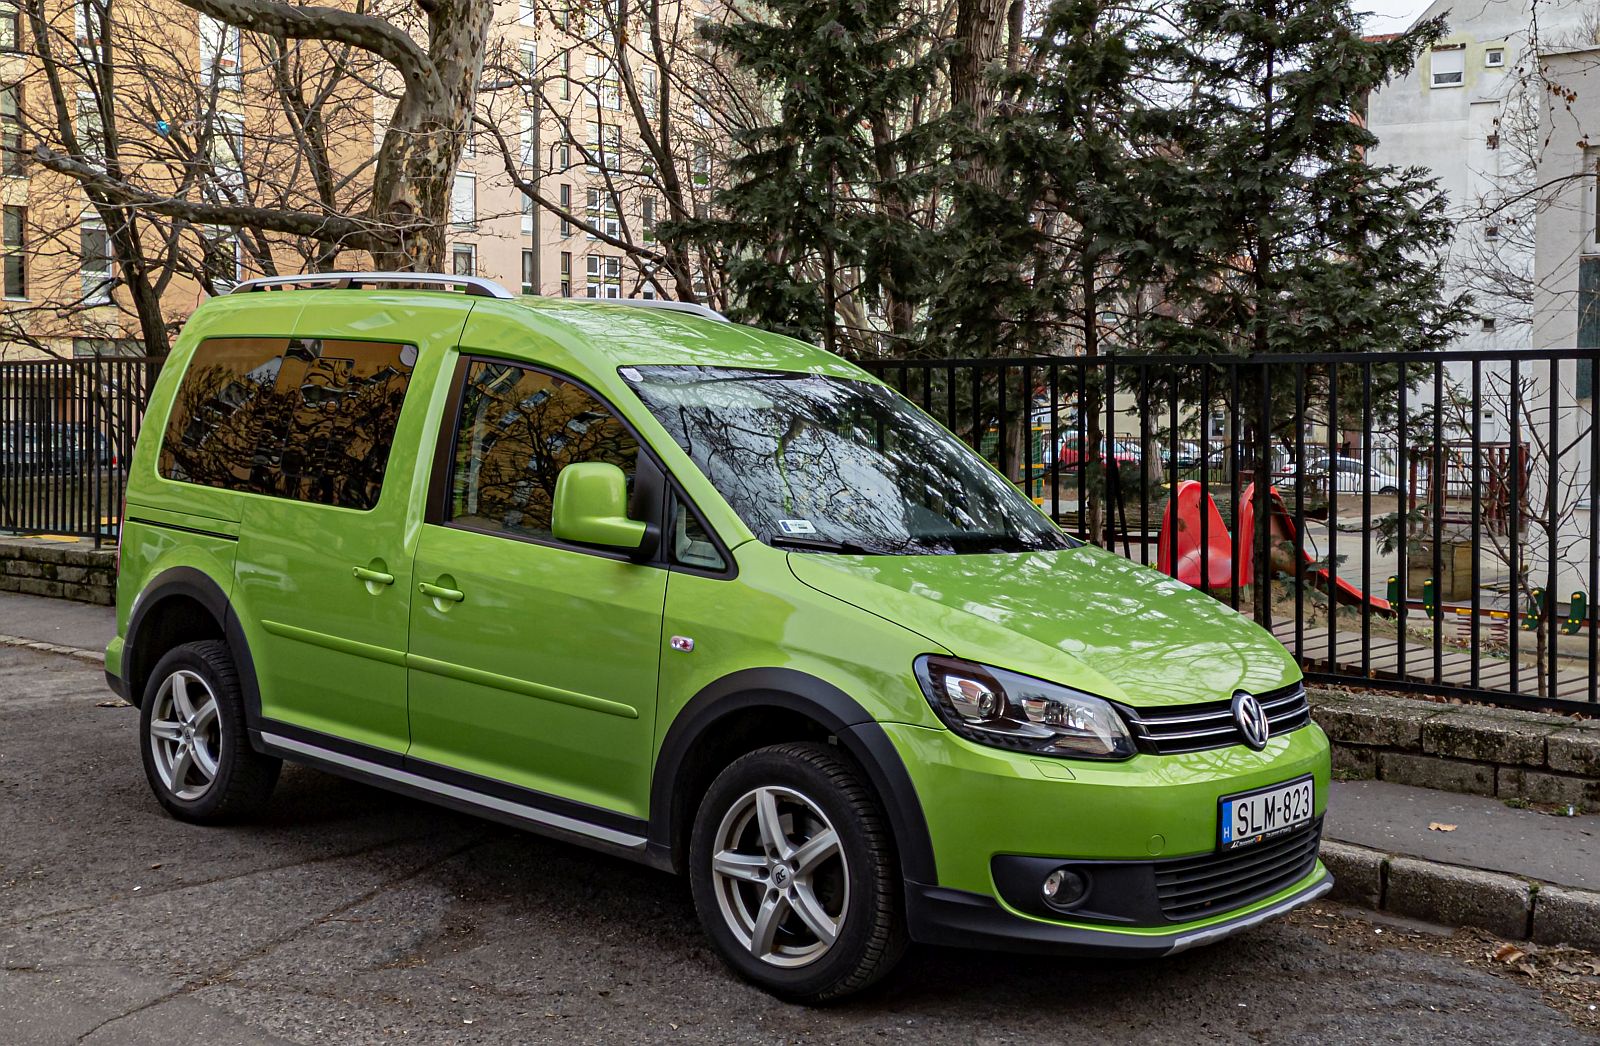 Diesen VW Caddy in Vipergrün (Viper Green) habe ich in Januar, 2022 gesehen.